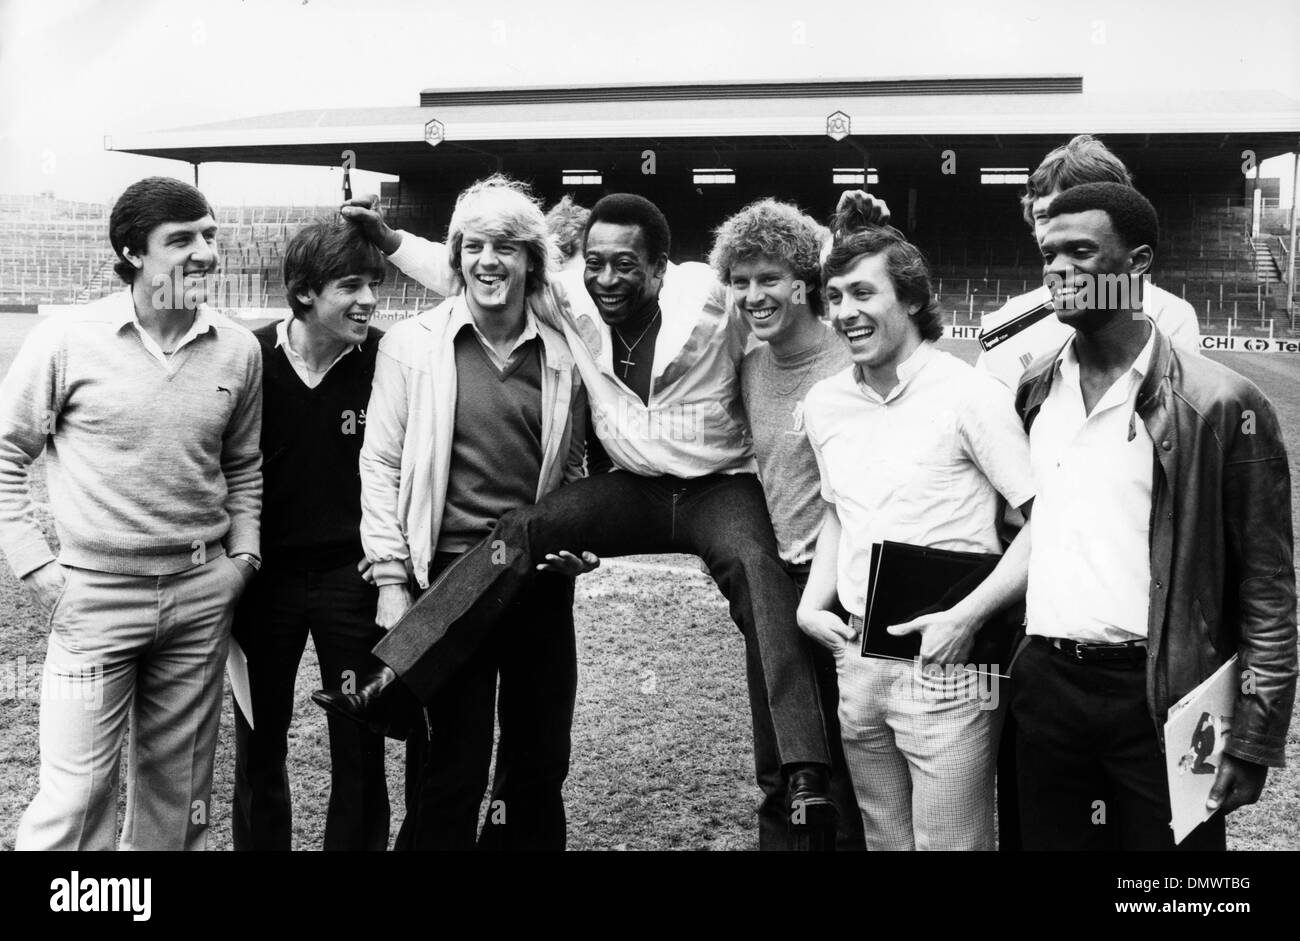 1 maggio 1981 - Londra, Inghilterra, Regno Unito - Calciatore brasiliano Pelé incontra i membri dell'Arsenal Football Club di Highbury dopo la giunzione di una impresa di sponsorizzazione con il club.(Immagine di credito: © Keystone Pictures USA/ZUMAPRESS.com) Foto Stock